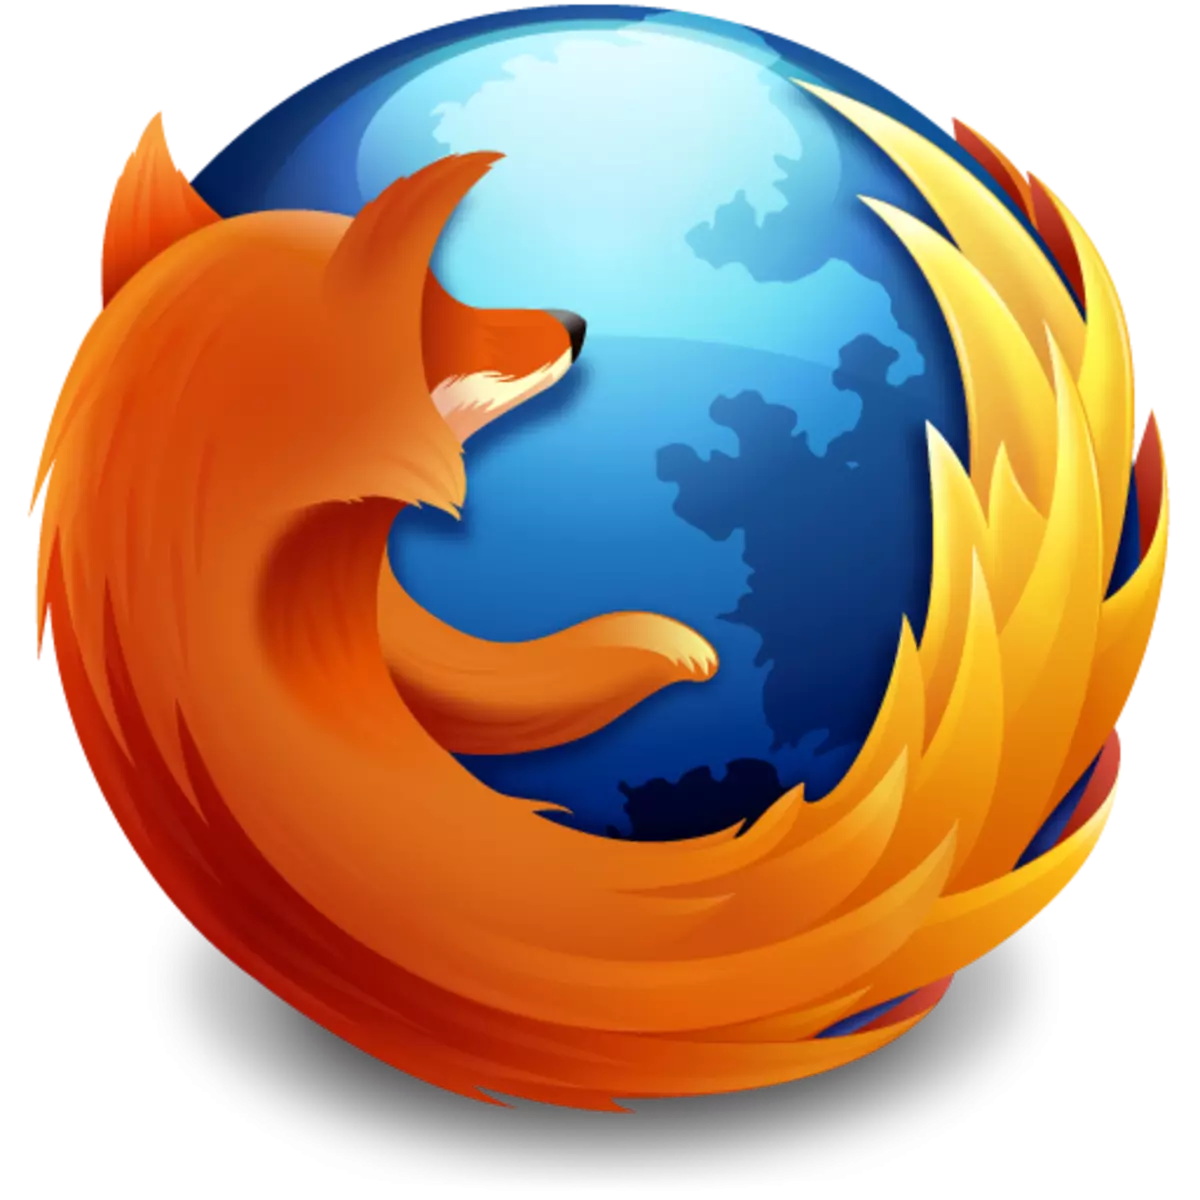 Express paneeli reguleerimine Firefoxis